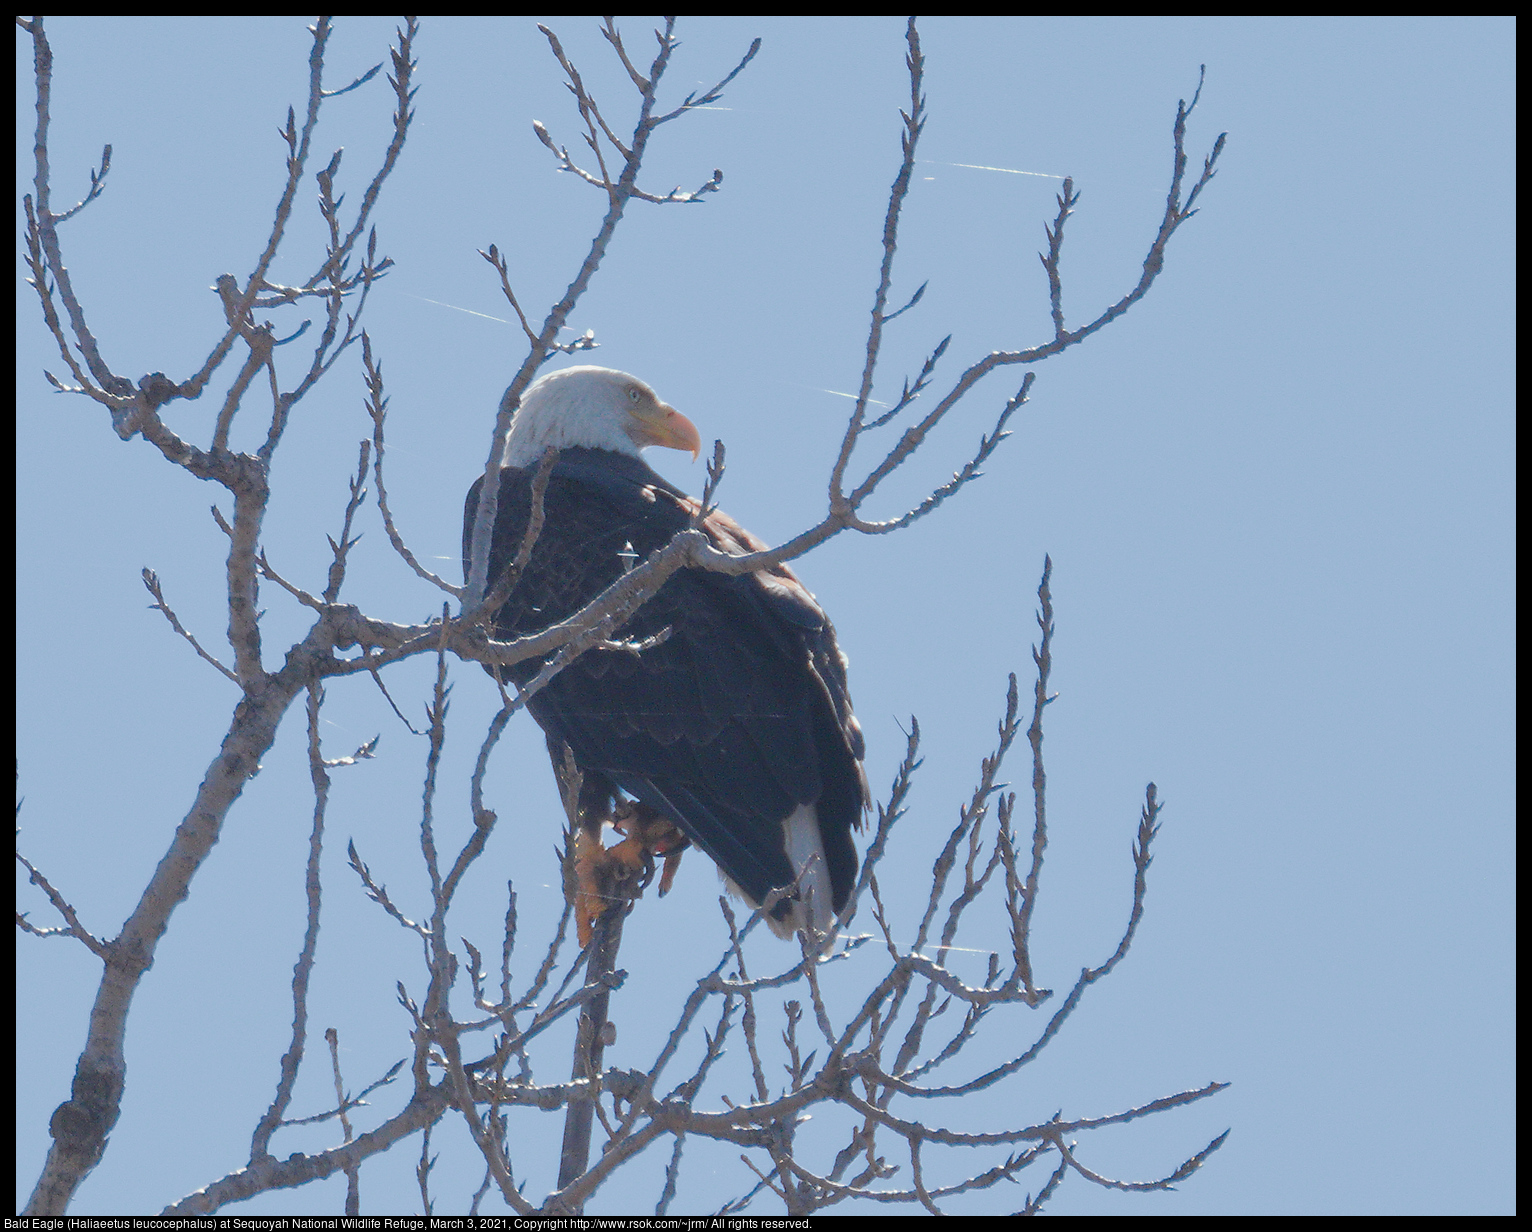 Bald Eagle (Haliaeetus leucocephalus) at Sequoyah National Wildlife Refuge, March 3, 2021